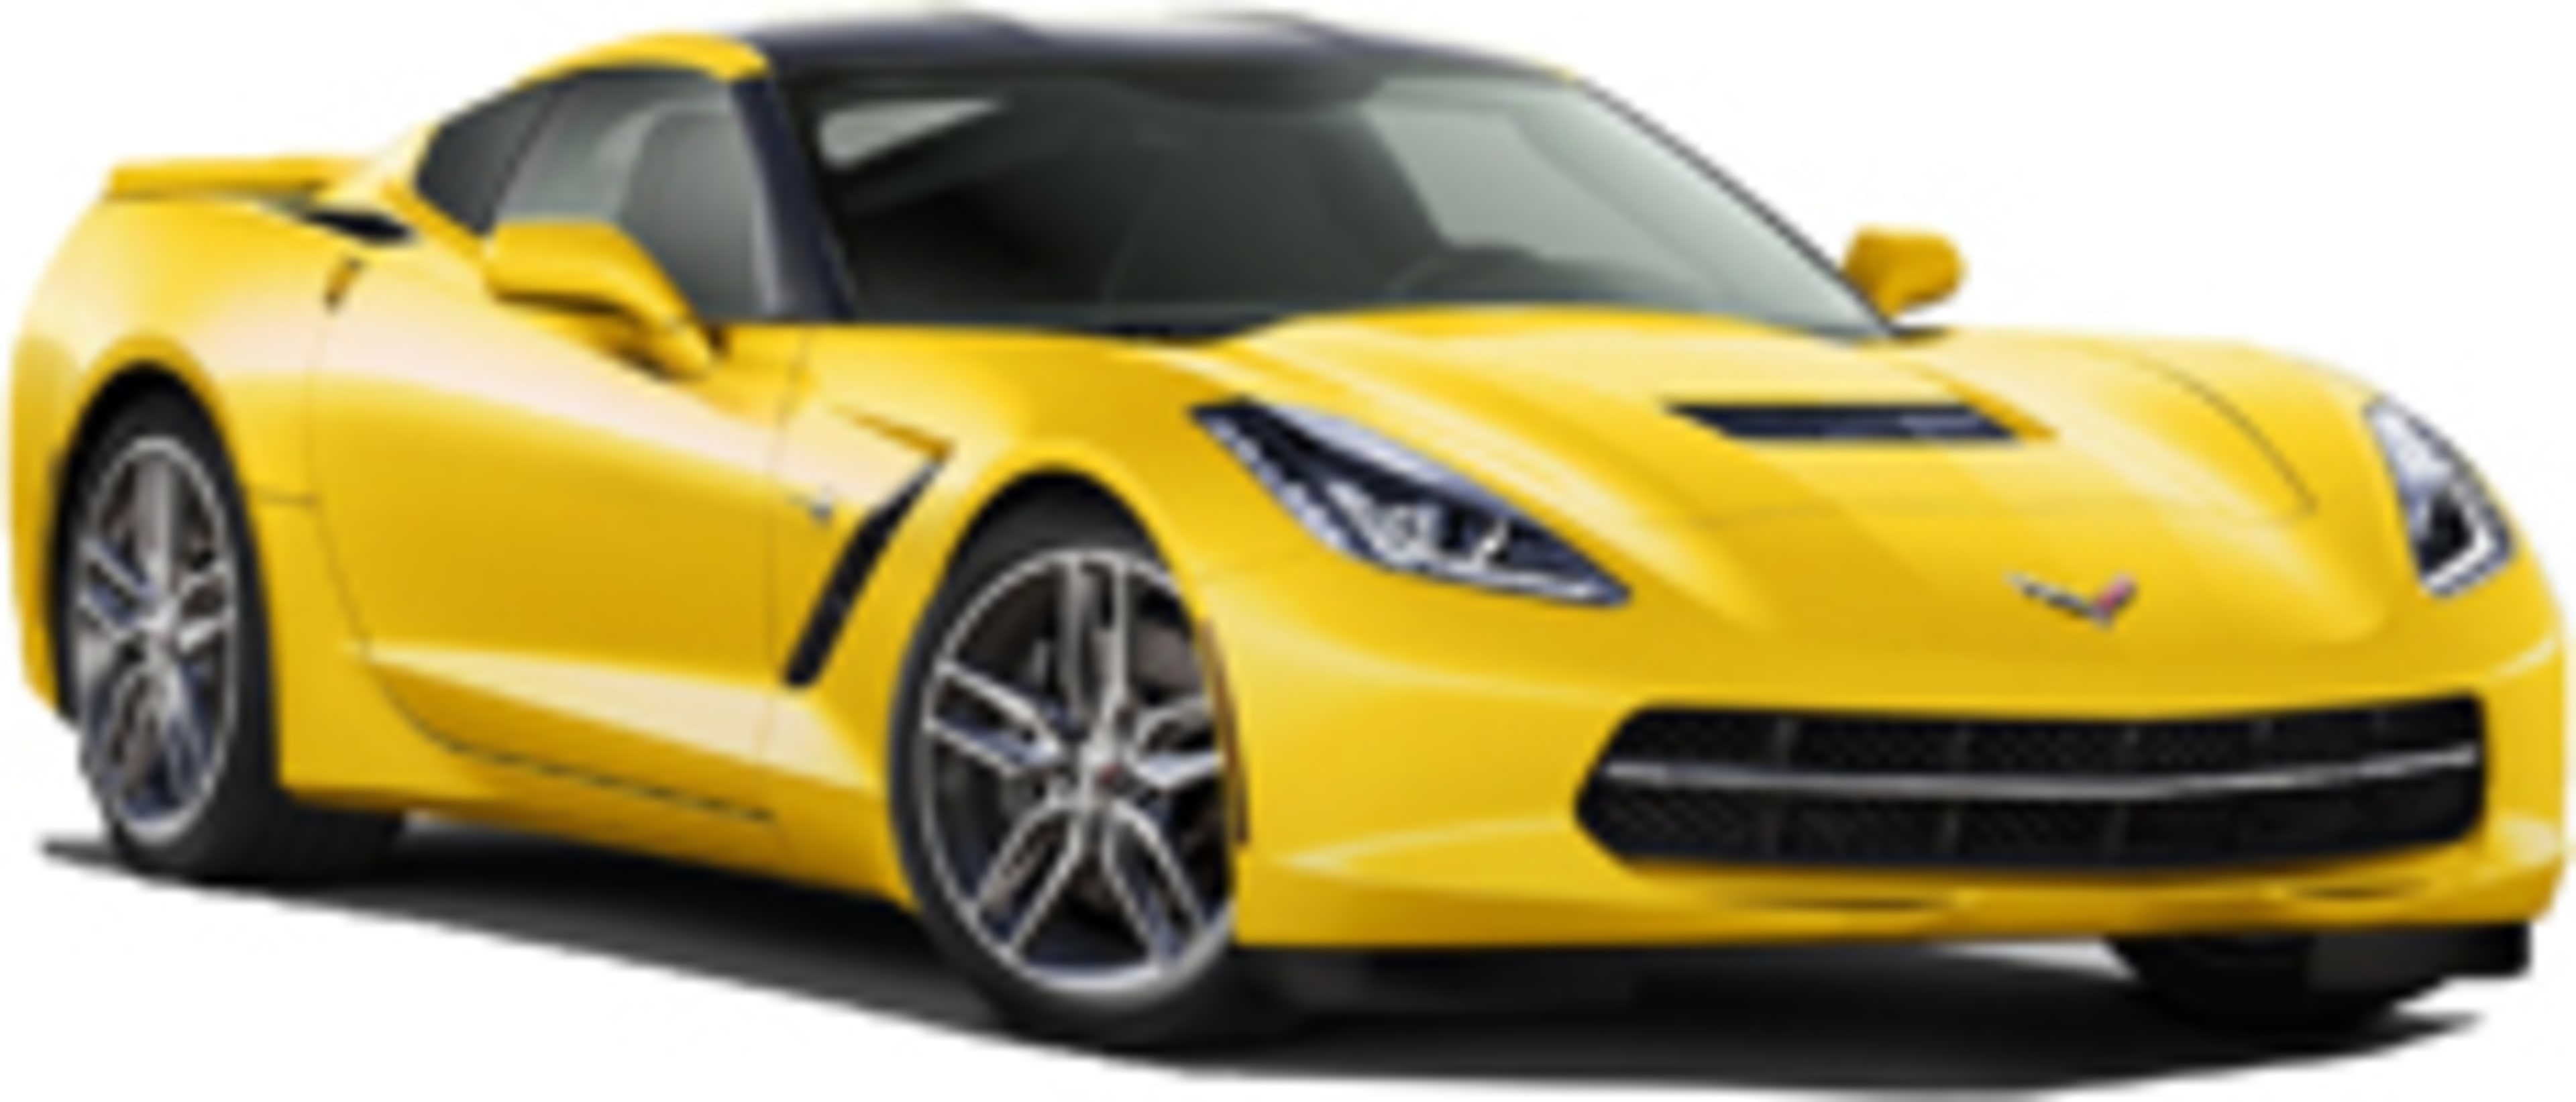 2014 Chevrolet Corvette Service and Repair Manual